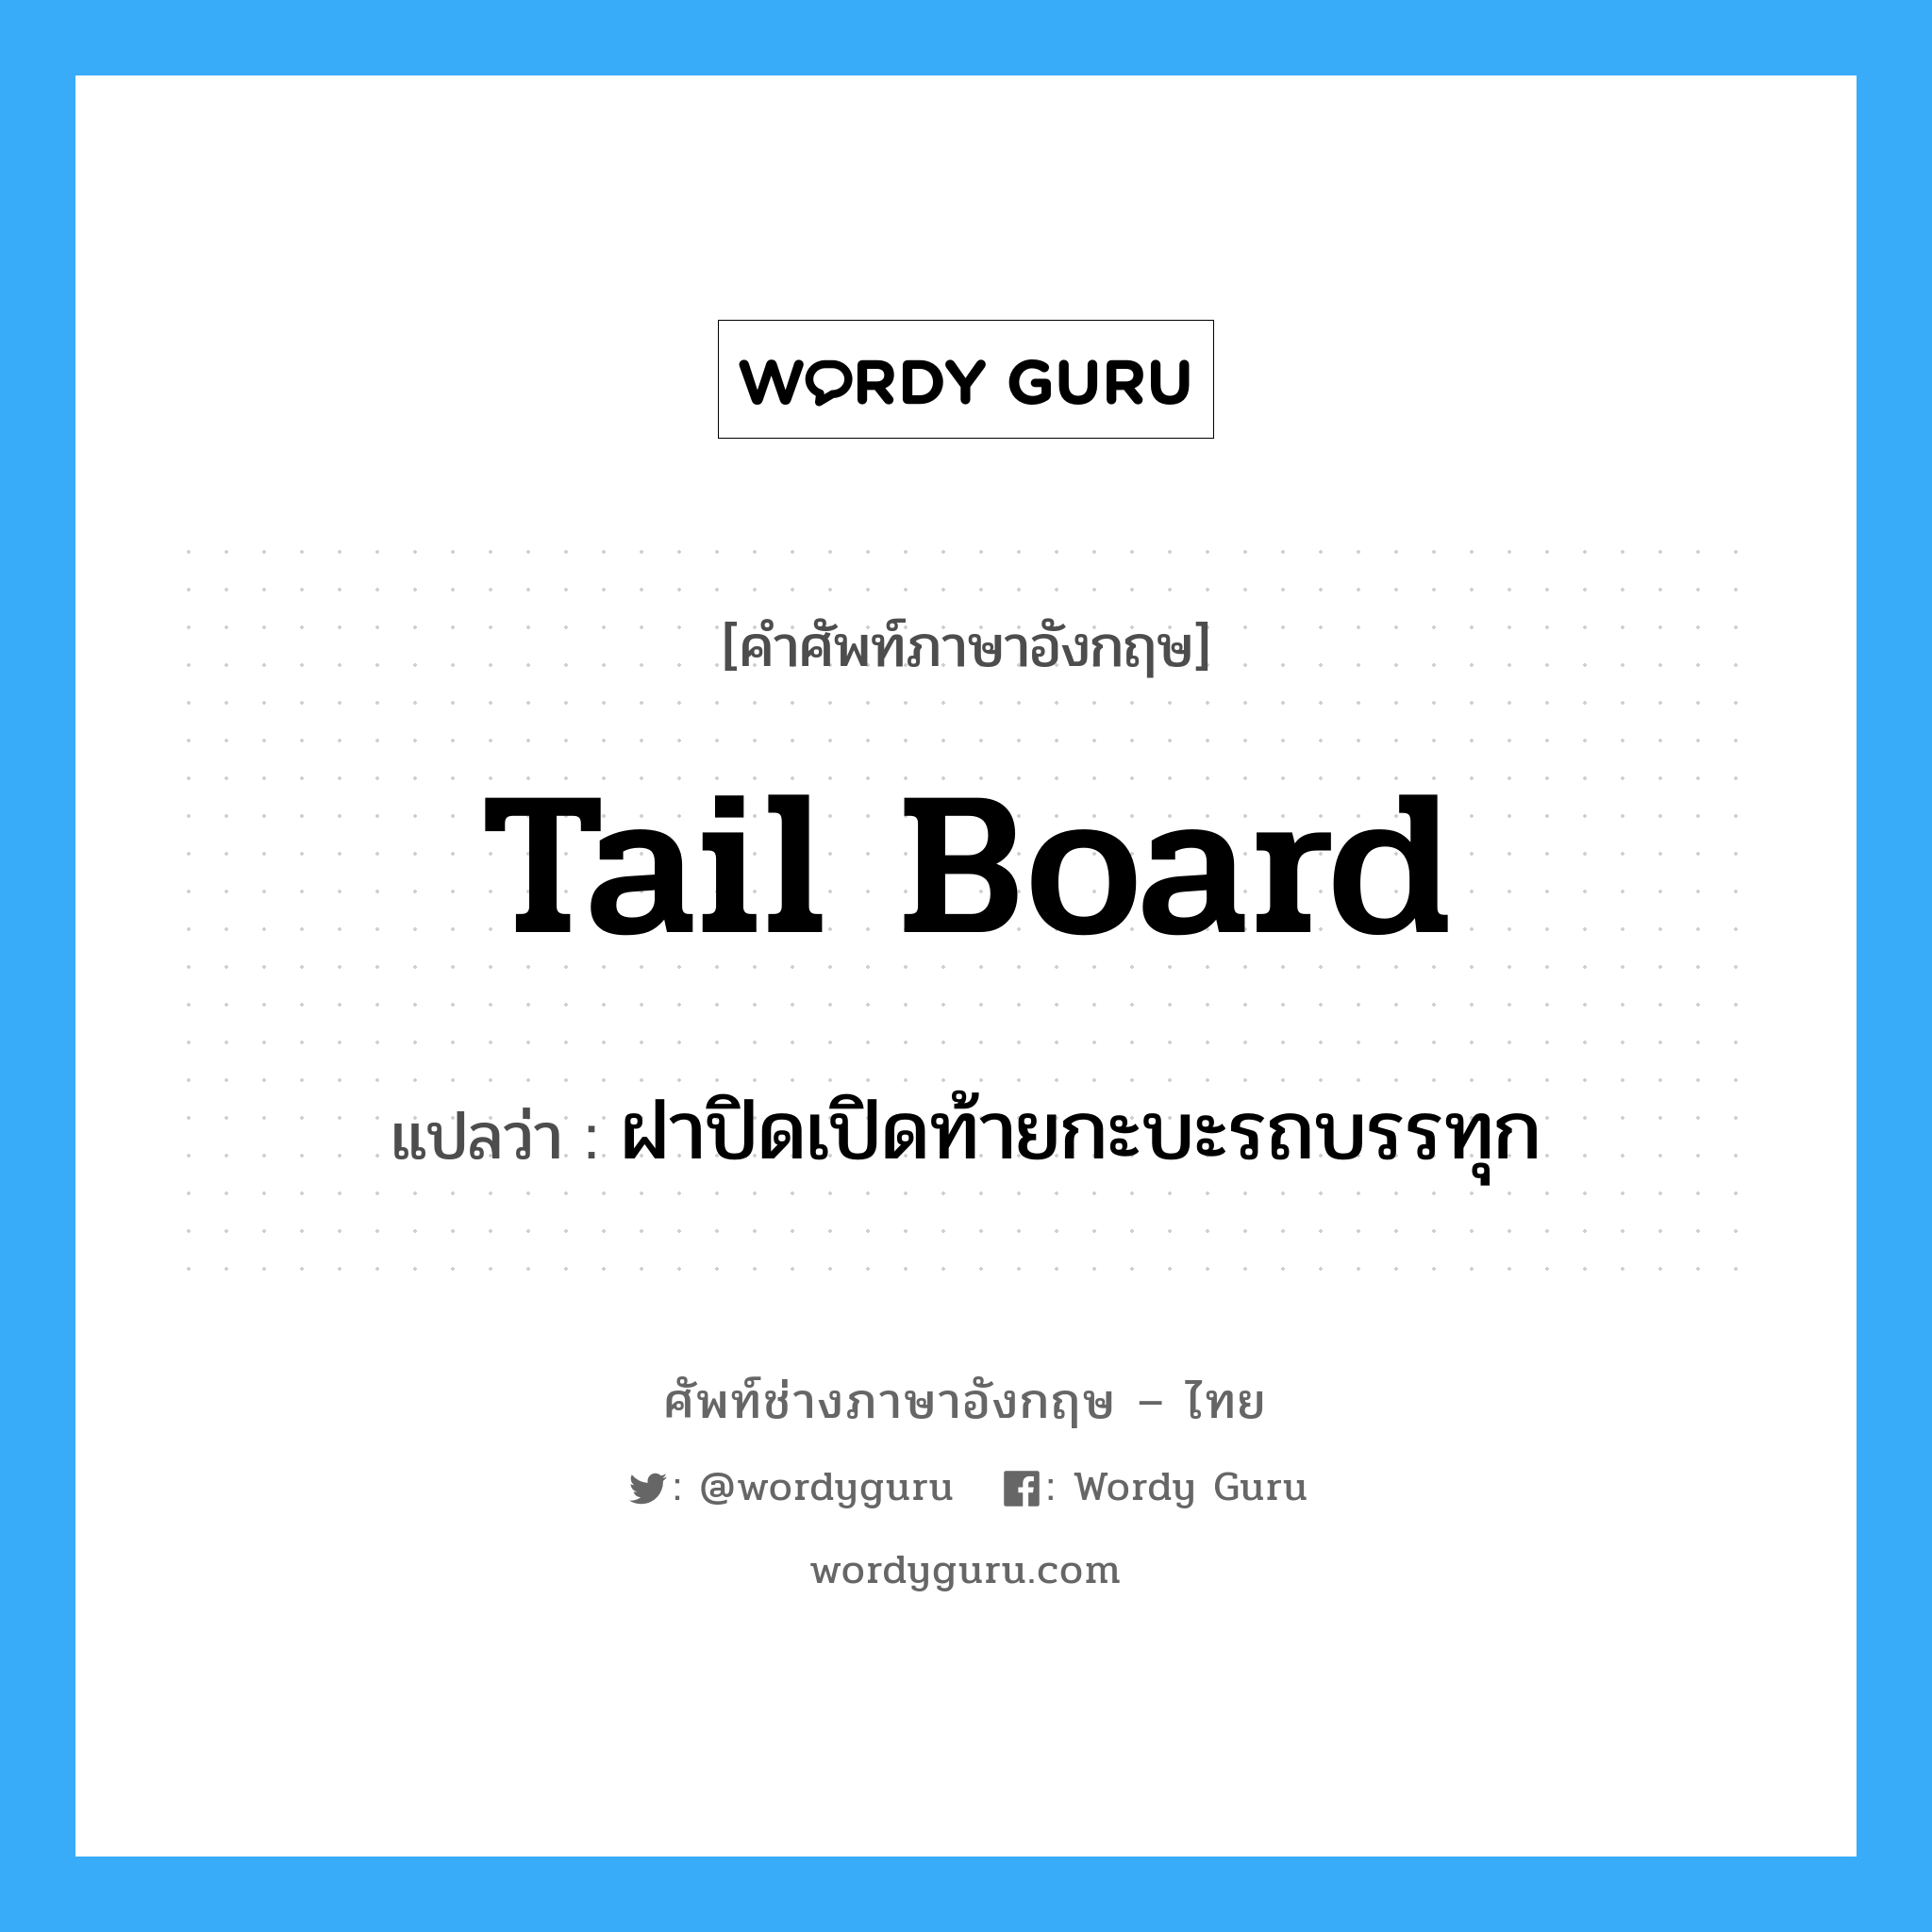 tail-board แปลว่า?, คำศัพท์ช่างภาษาอังกฤษ - ไทย tail board คำศัพท์ภาษาอังกฤษ tail board แปลว่า ฝาปิดเปิดท้ายกะบะรถบรรทุก